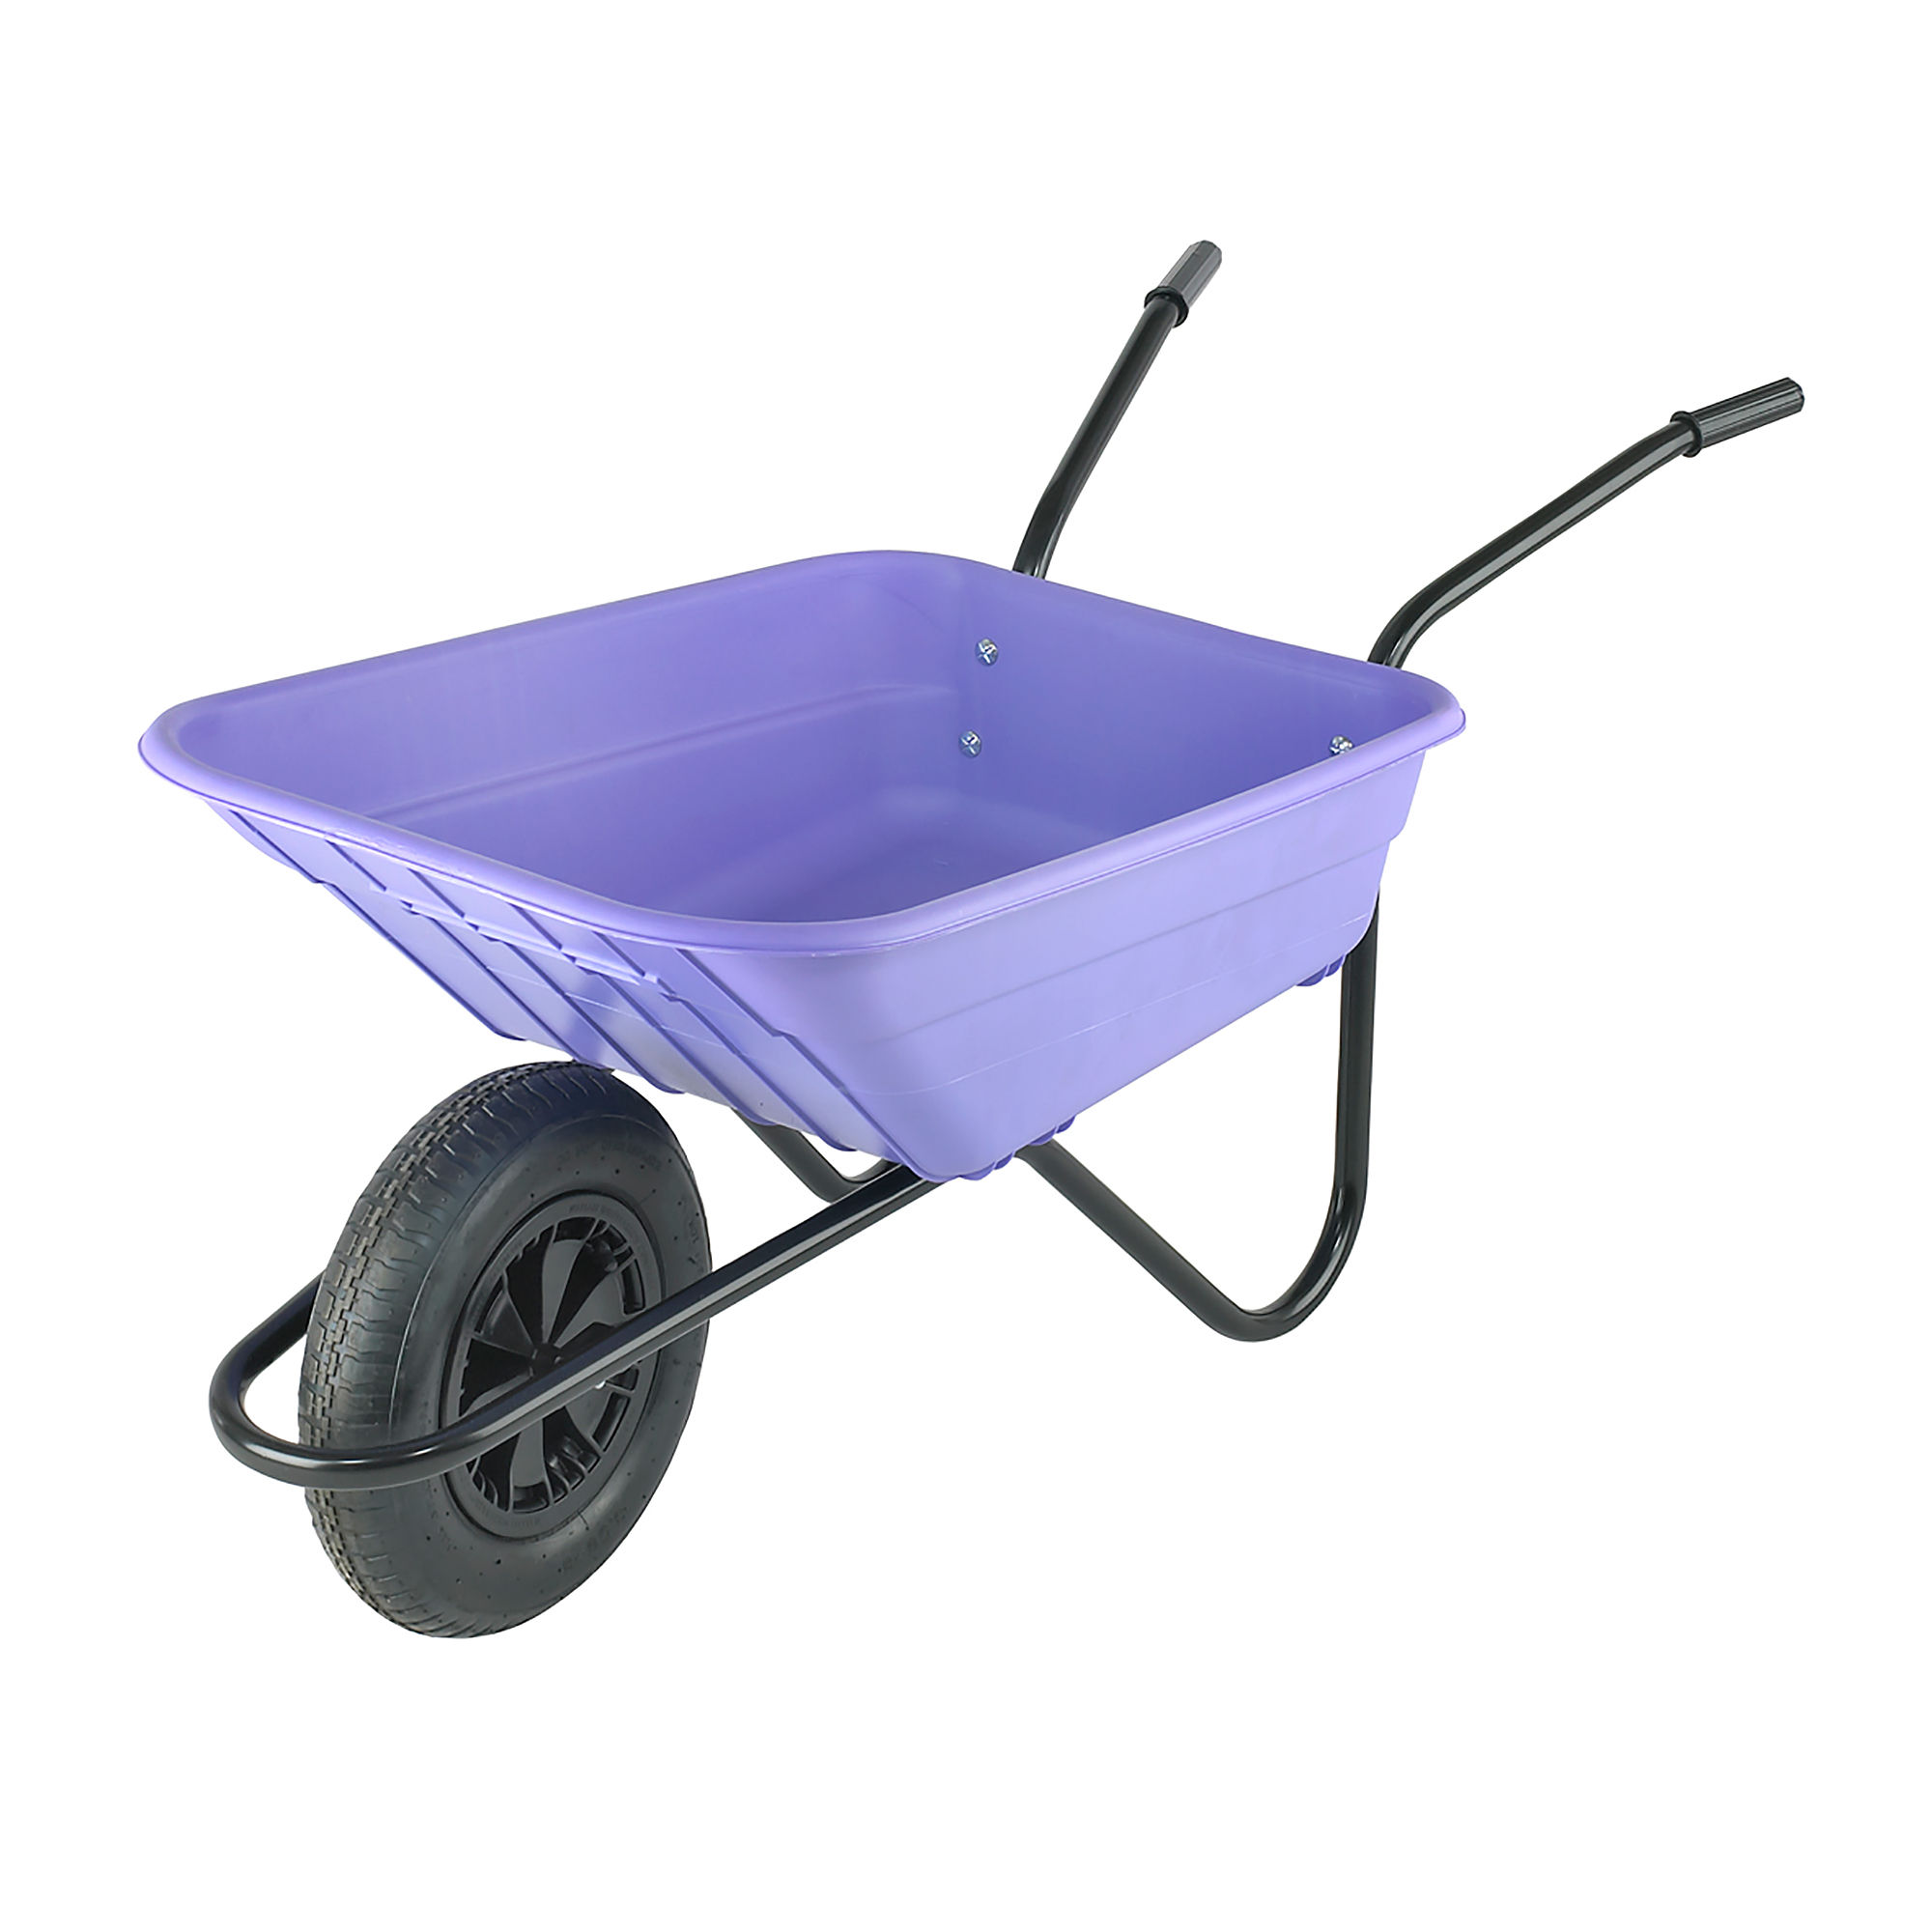 Walsall Polypropylene Wheelbarrow in a Box Pneumatic Tyre Lilac 90L - BSHLILP